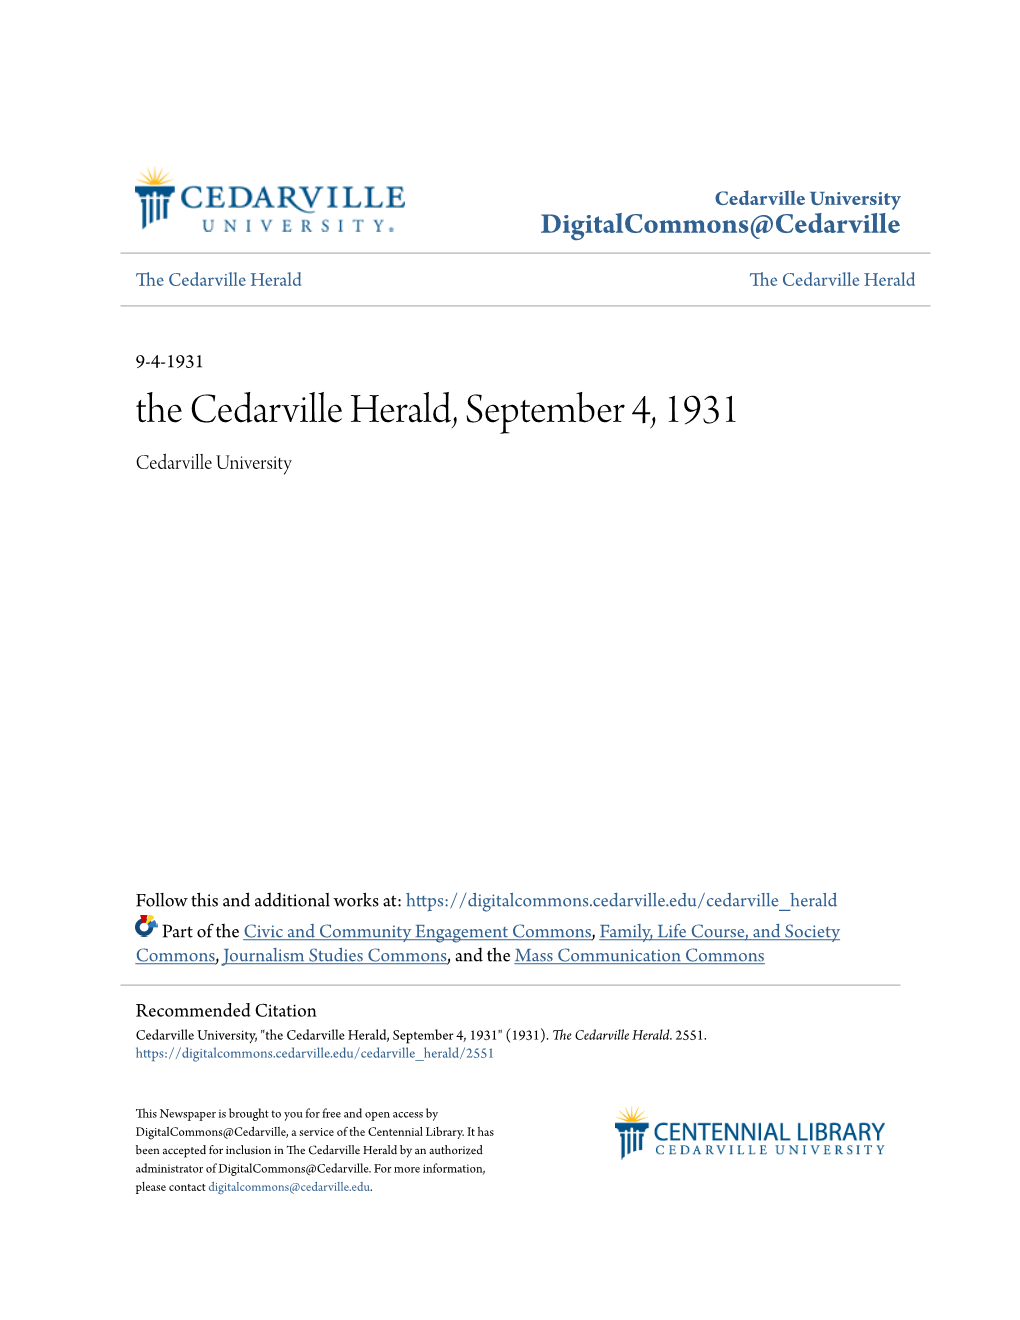 The Cedarville Herald, September 4, 1931 Cedarville University